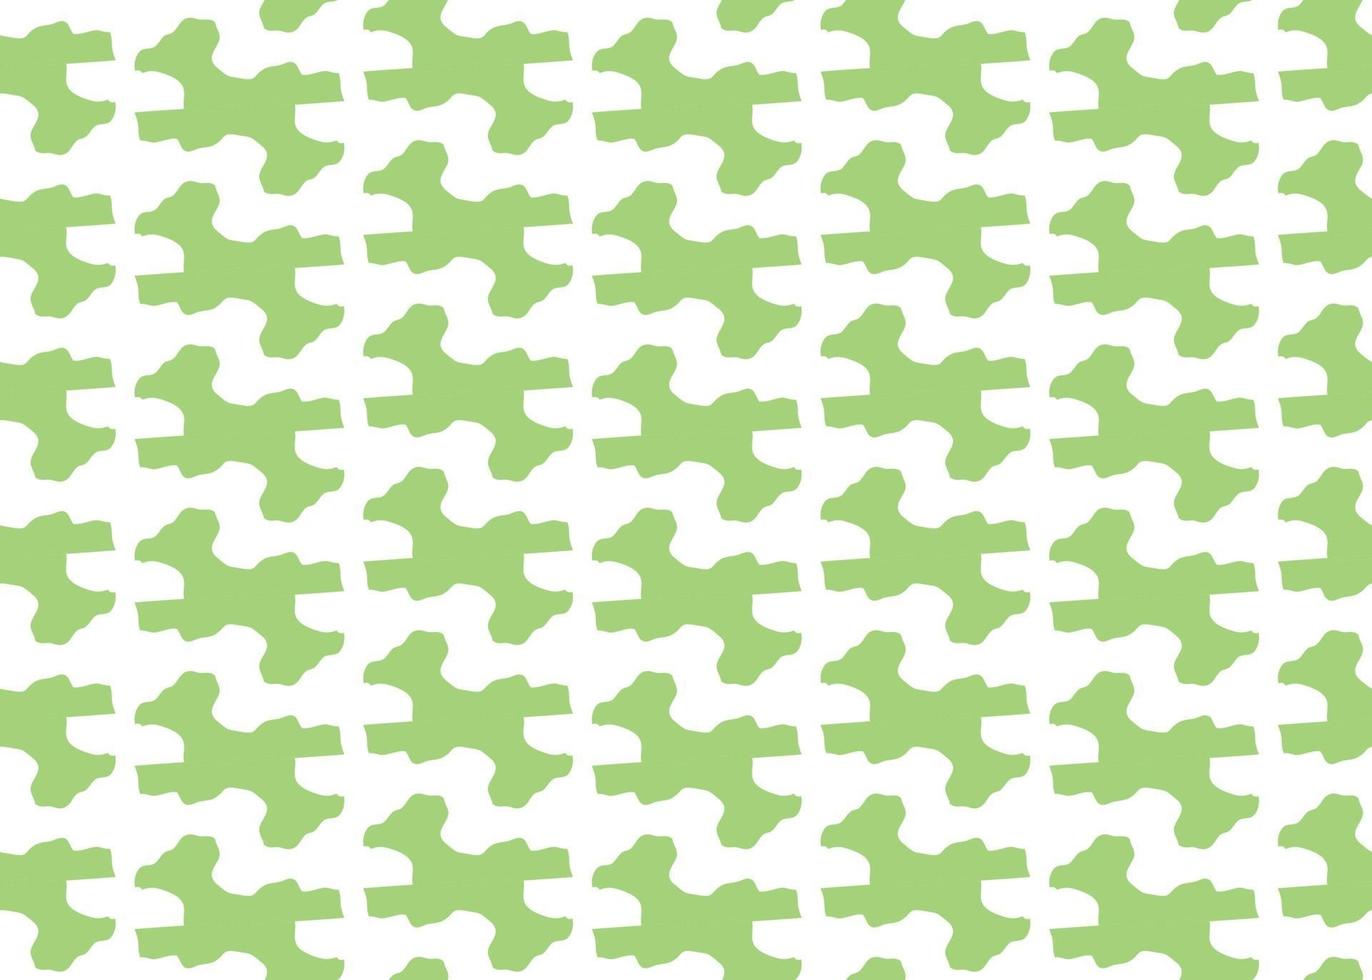 Vector texture di sfondo, seamless pattern. colori disegnati a mano, verdi, bianchi.